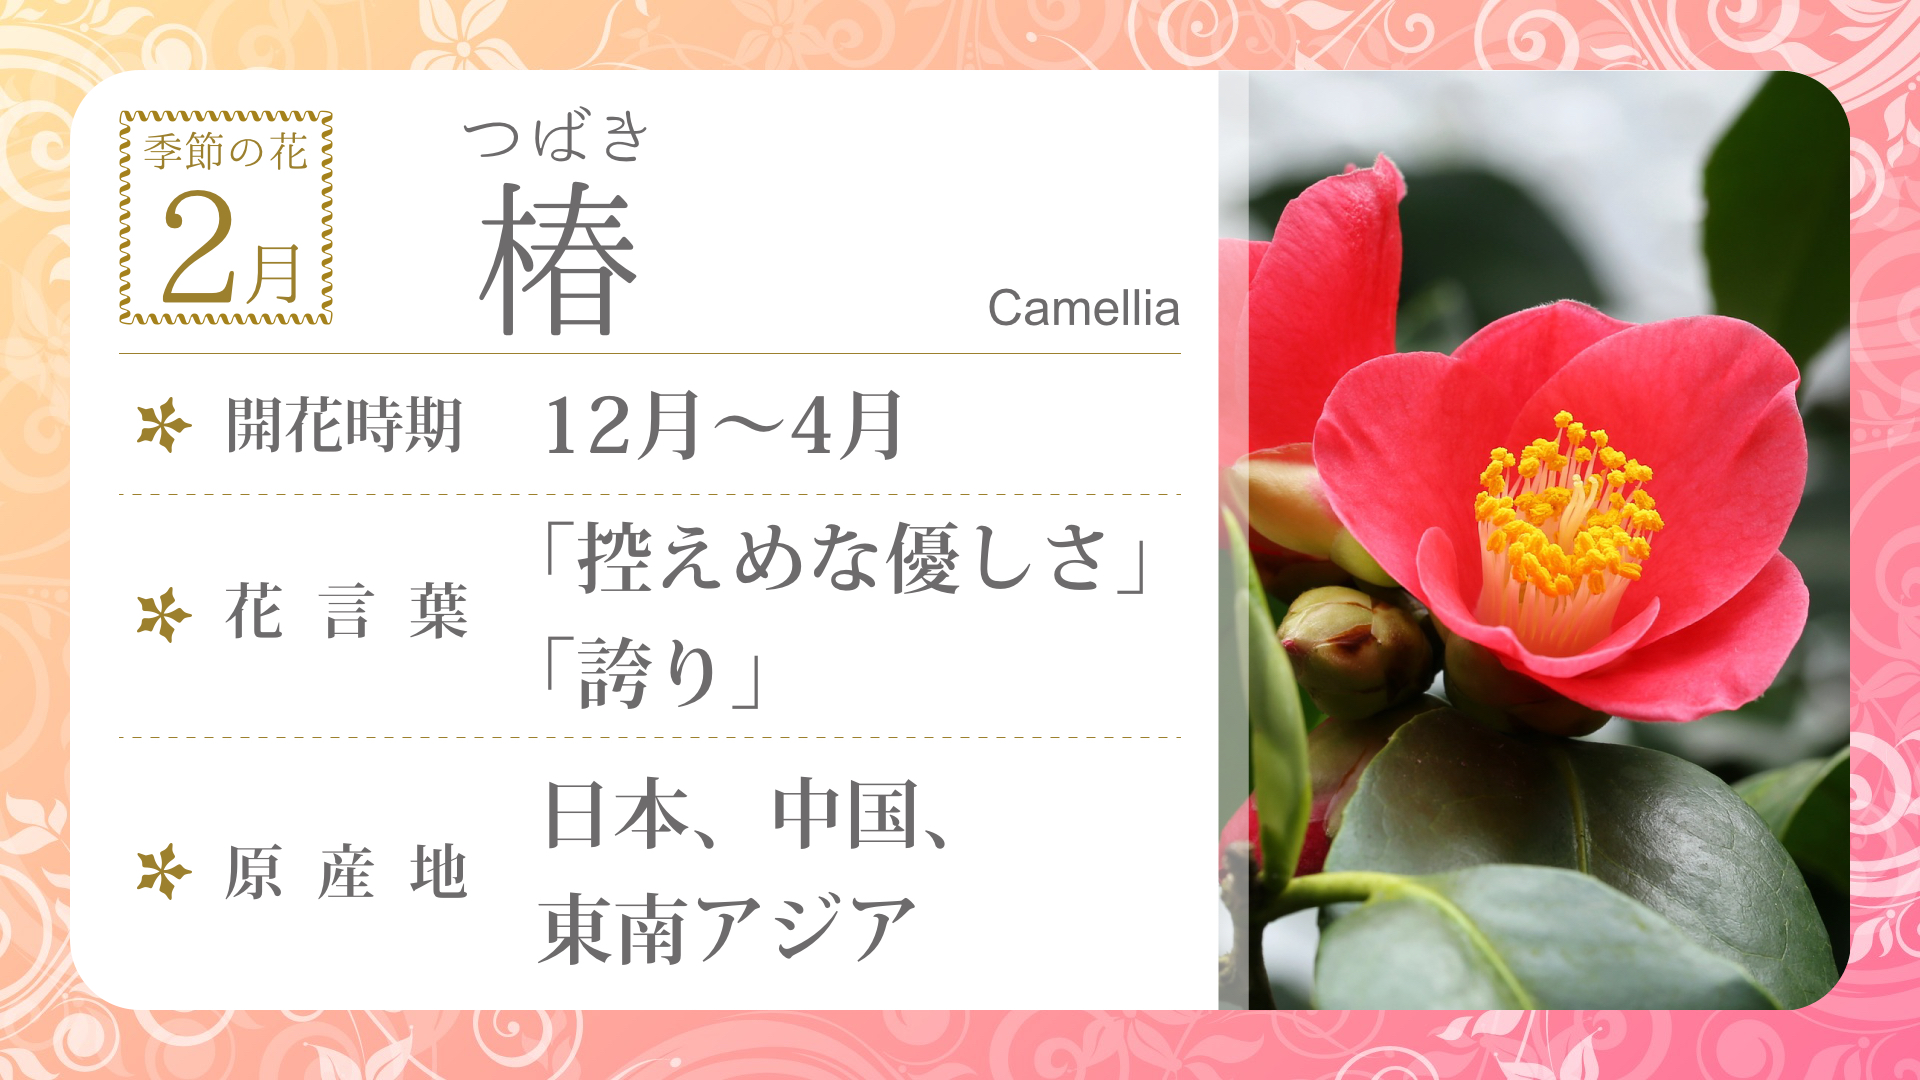 Nh Flower02 季節の花 2月 デジタルサイネージ配信コンテンツ